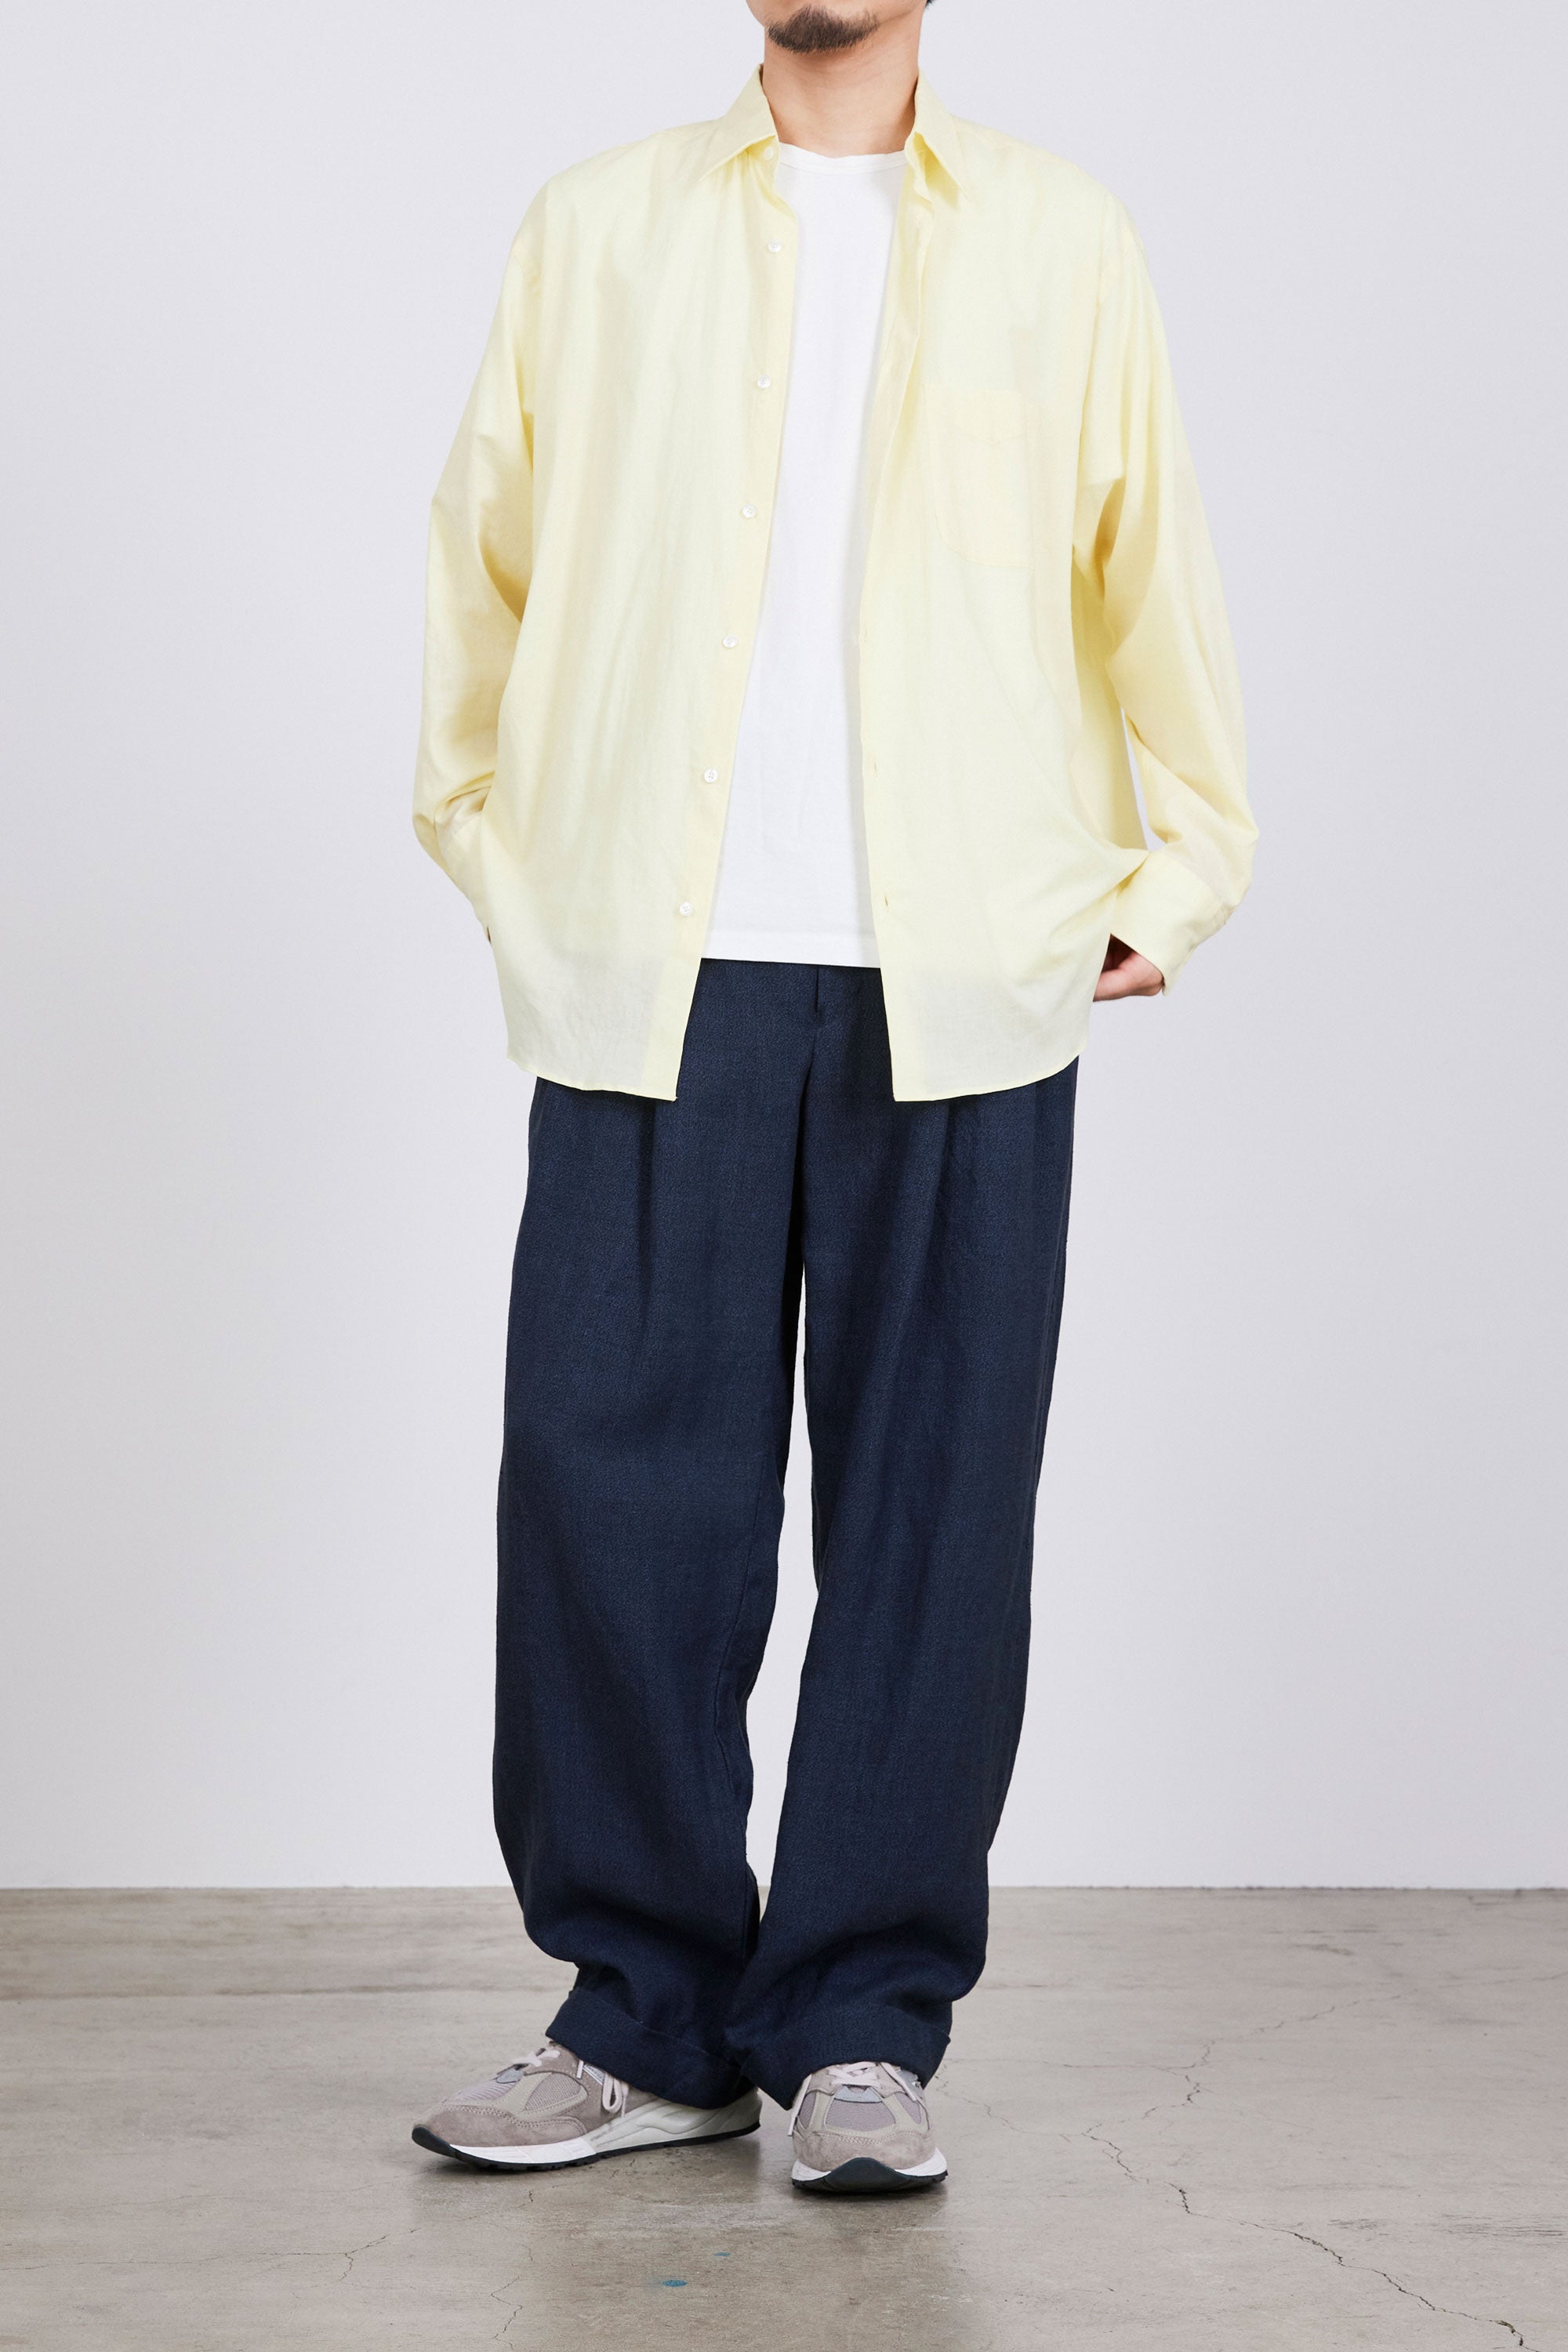 オーガニックペルーピマコットン60/-ローン / コンフォートフィットシャツ, Yellow